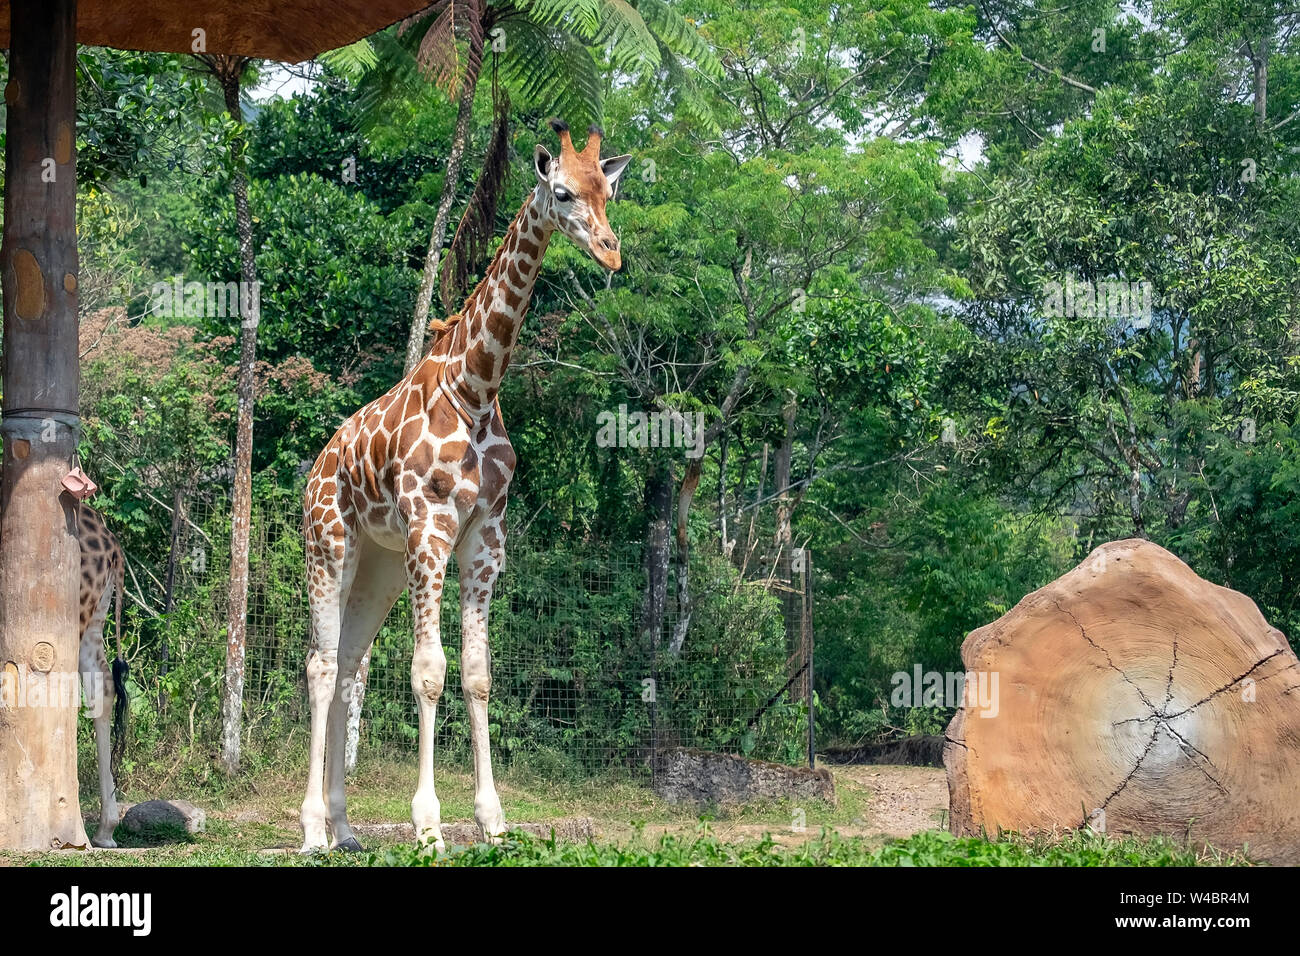 Girafe (Giraffa) est un mammifère ongulé à longs doigts même, le plus grand animal terrestre vivant et le plus grand ruminant. Banque D'Images